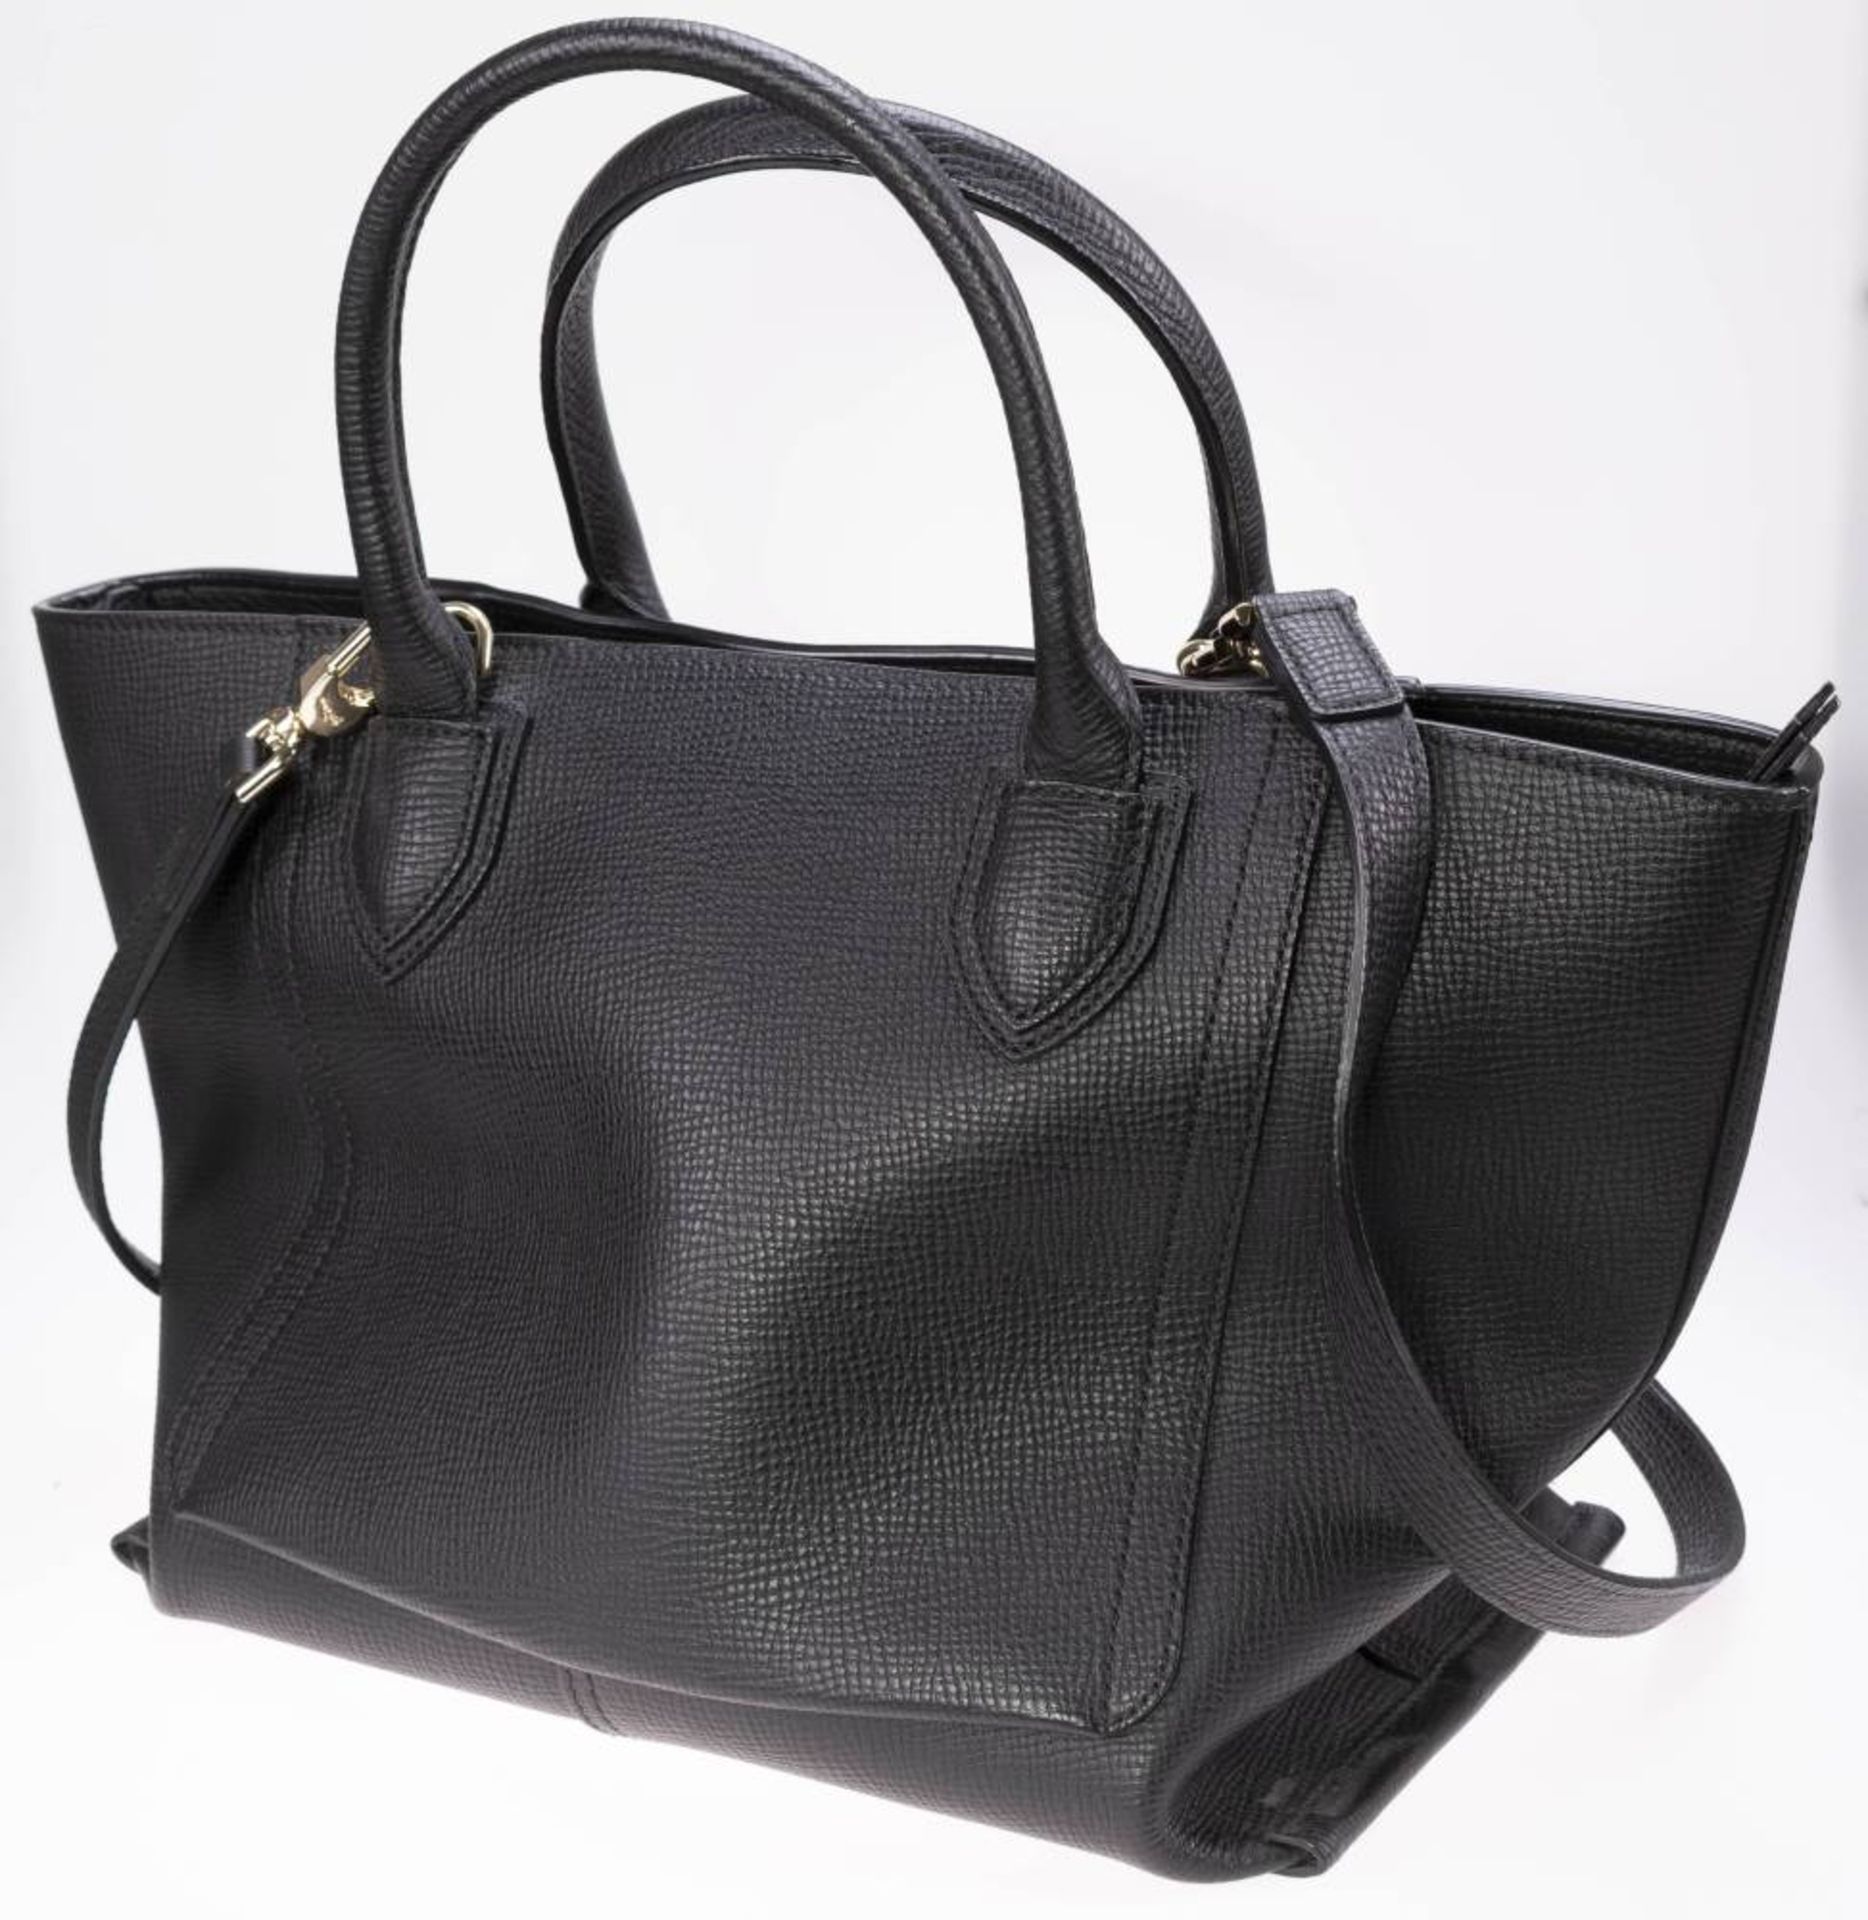 Longchamp Shopper, schwarzes Leder, goldfarbenes Metall, Außentasche mit Reißverschluss, innen - Bild 6 aus 6